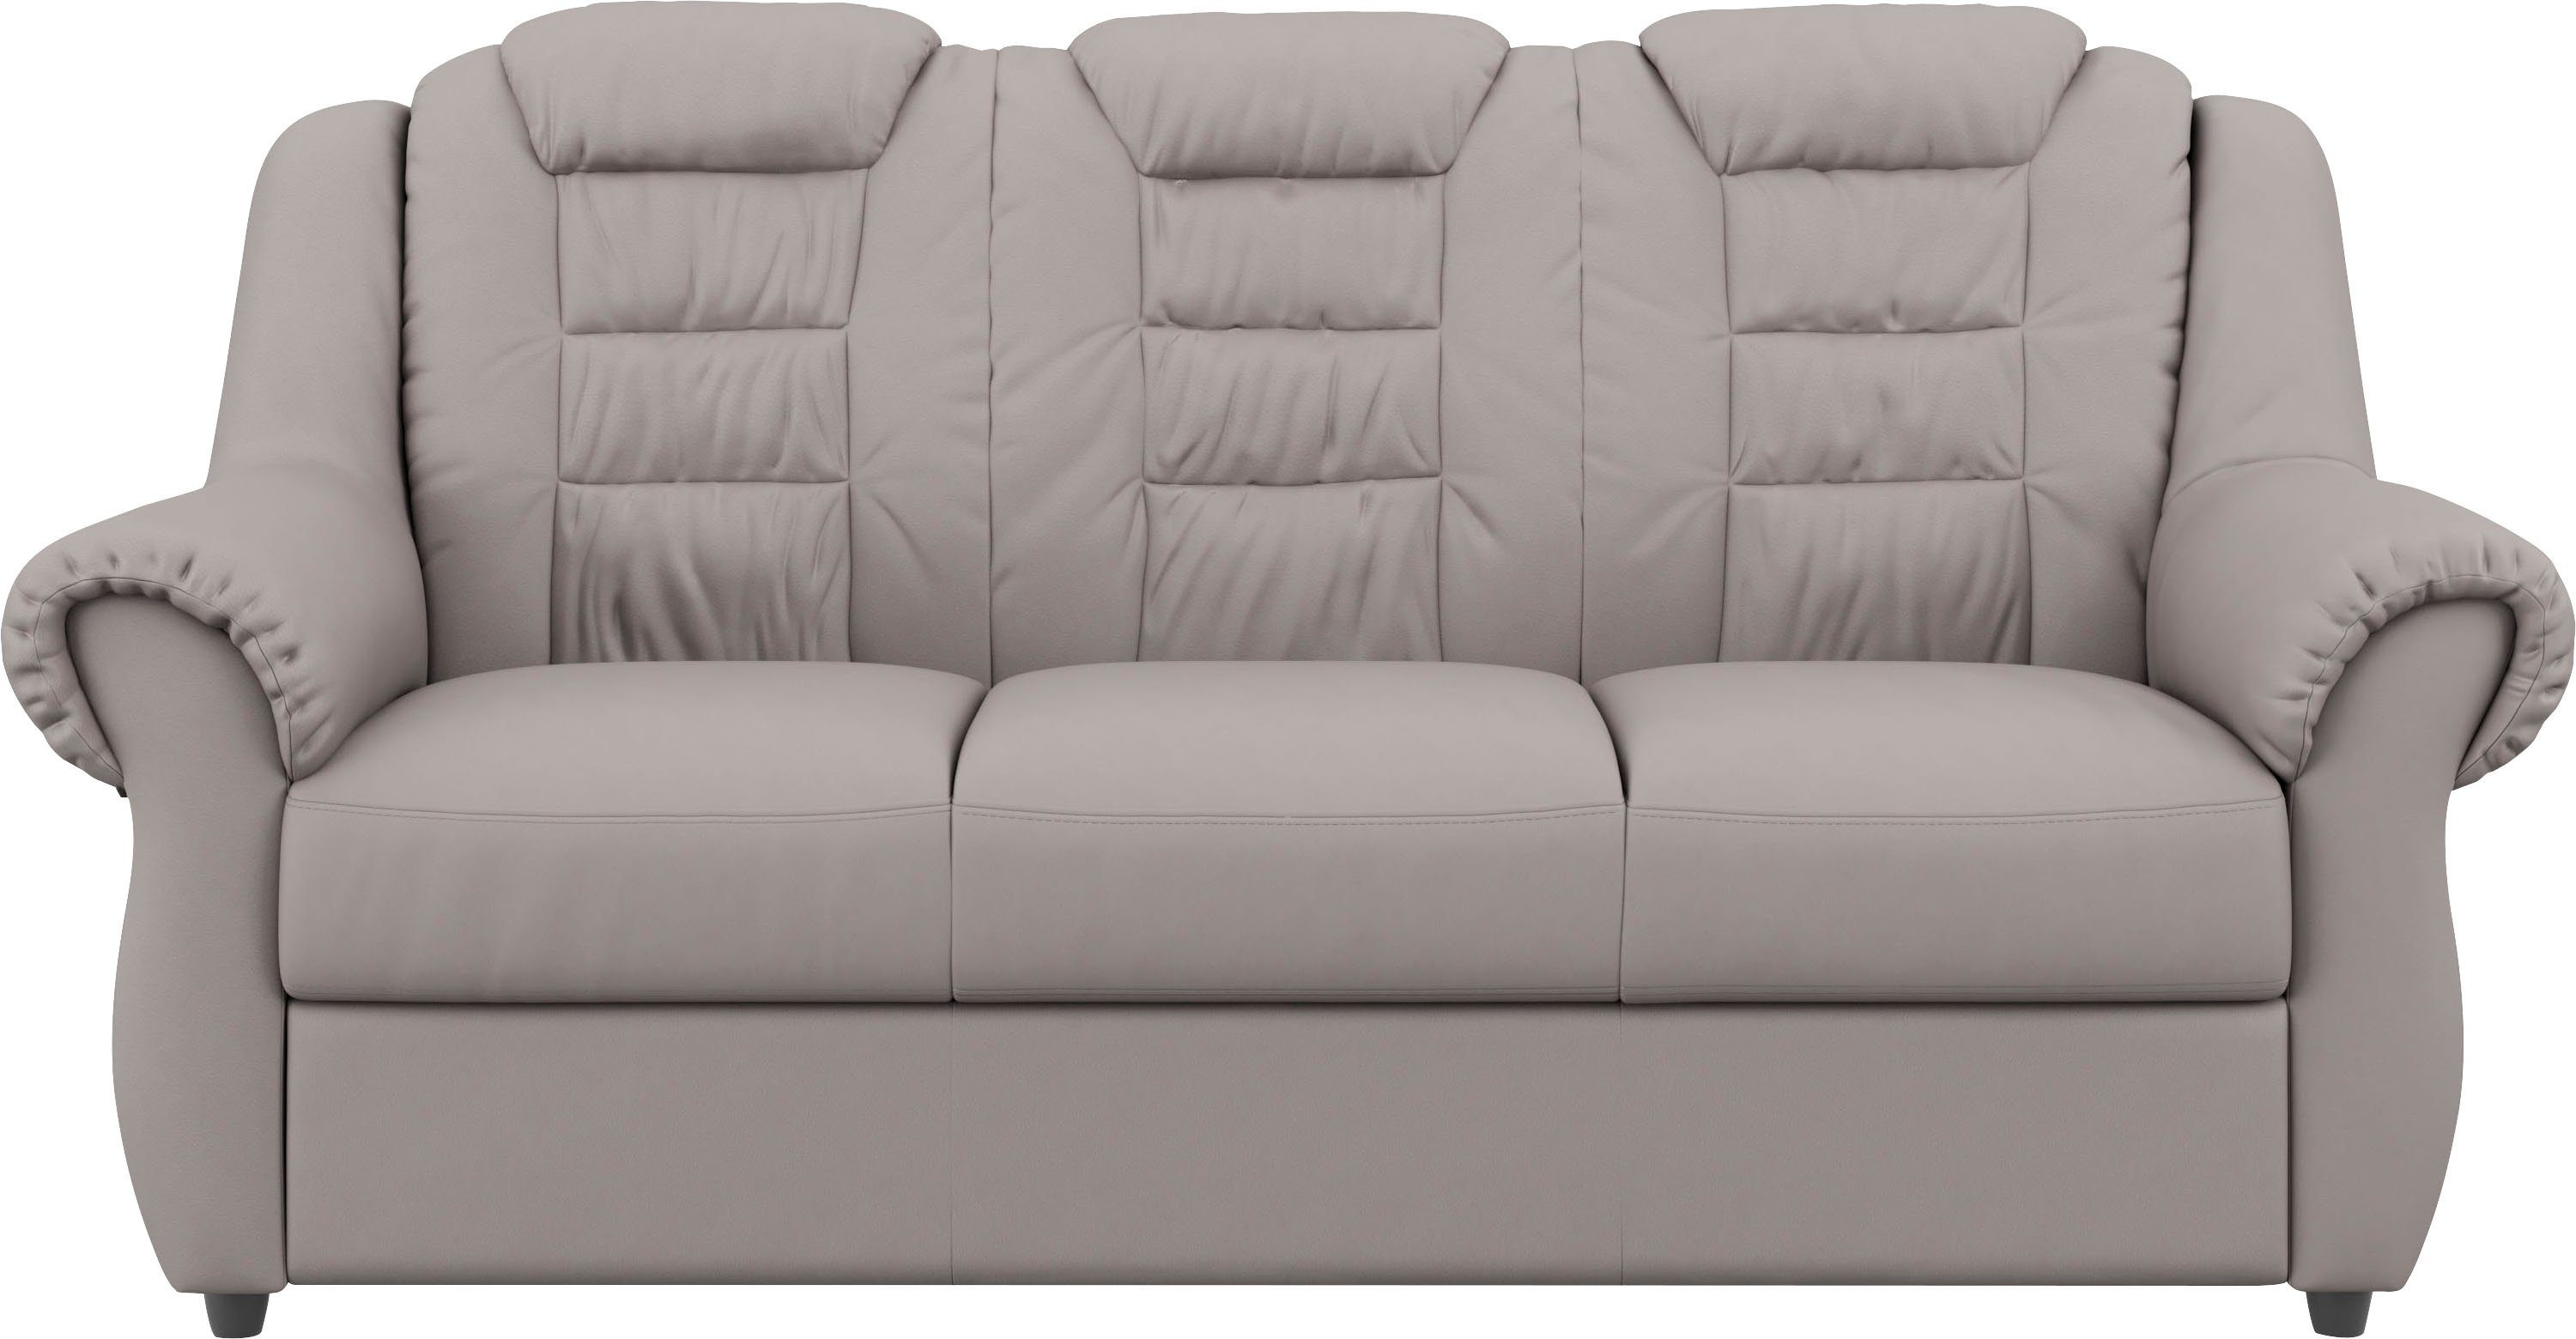 Home affaire 3-Sitzer Boston, Gemütlicher 3-Sitzer mit hoher Rückenlehne in klassischem Design